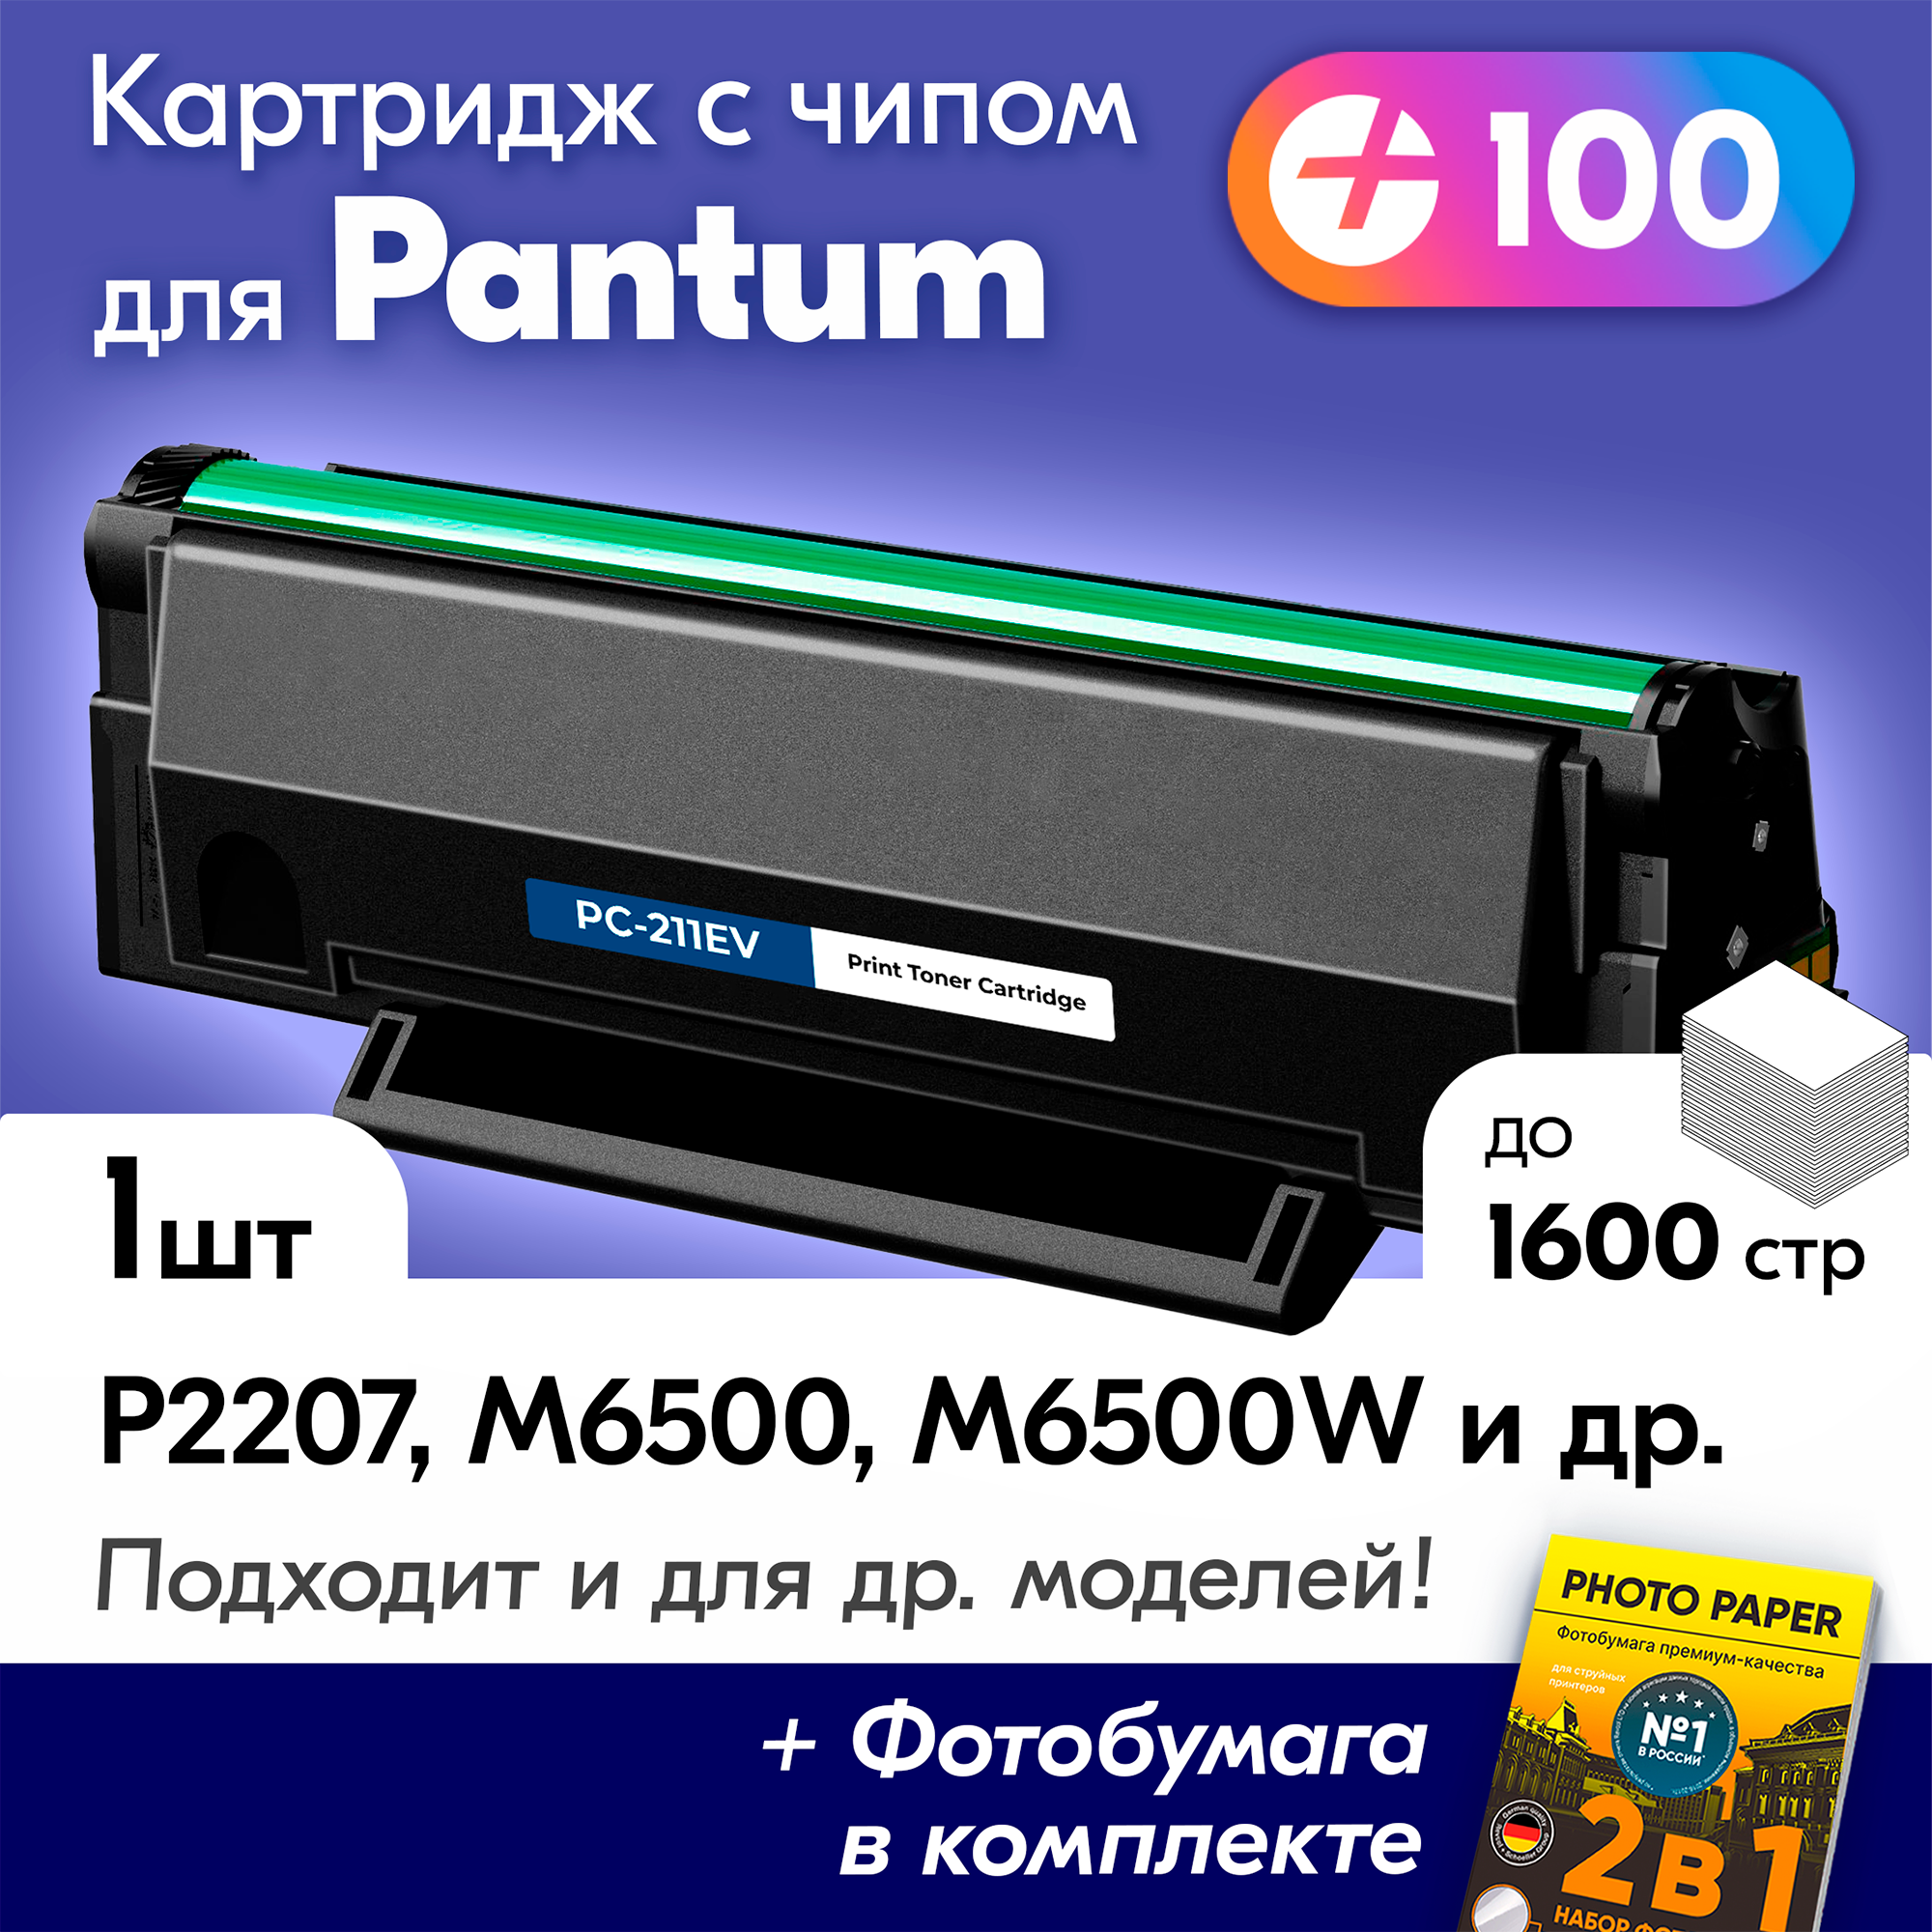 Лазерный картридж для Pantum PC-211EV, Pantum M6500, M6500W, M6507W, M6550NW, P2207 с краской (тонером) черный новый заправляемый, 1600 копий